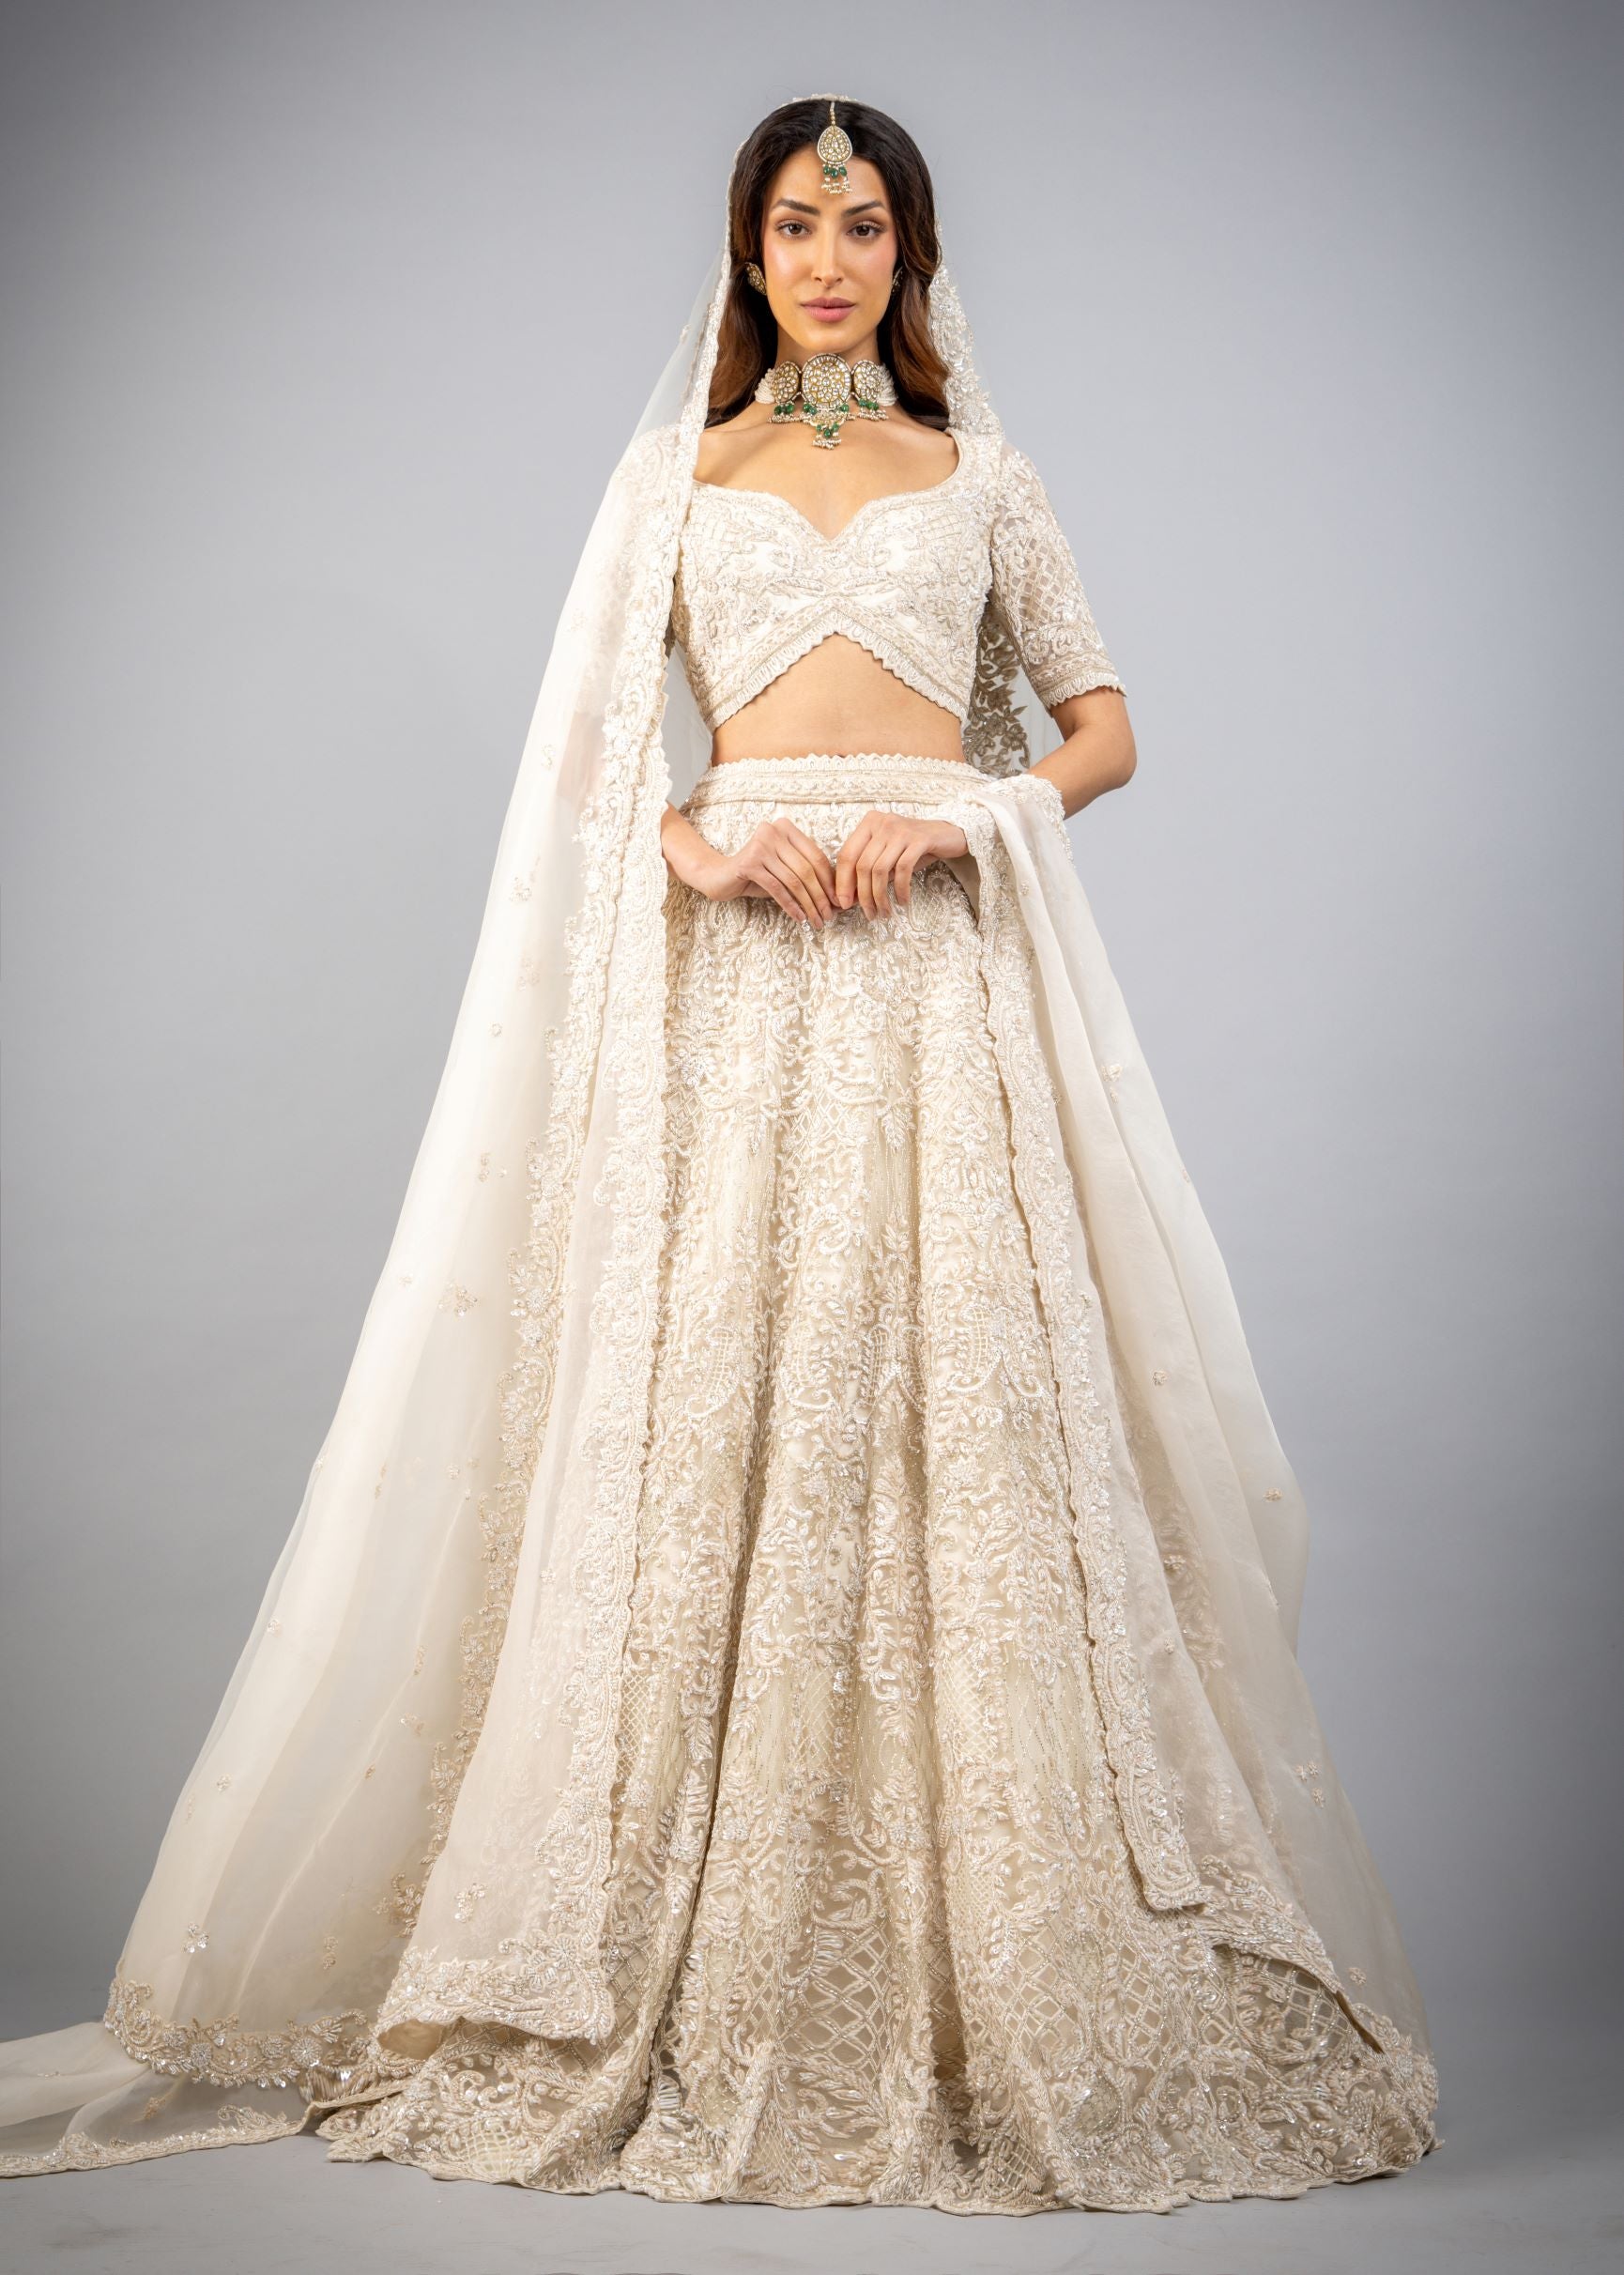 Ivory White off White Cream Luxury Indian Wedding Lehenha Choli Dress Desi  by Shivani Ivory Wedding Dress Indian Bridal Lehenga - Etsy